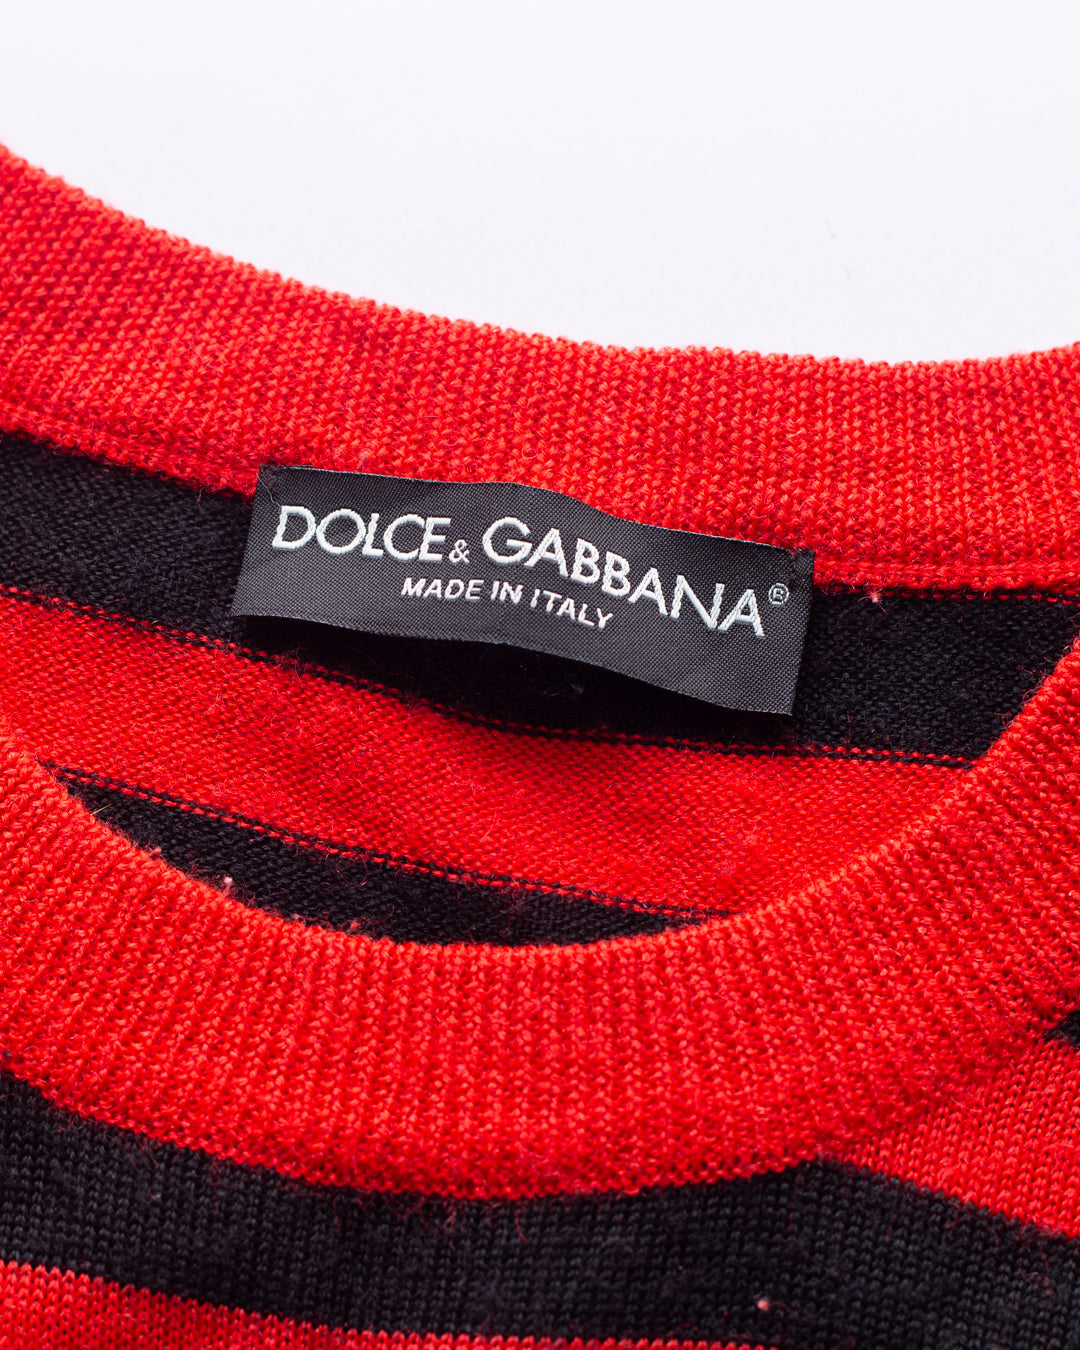 Dolce & Gabbana Knit Pullover